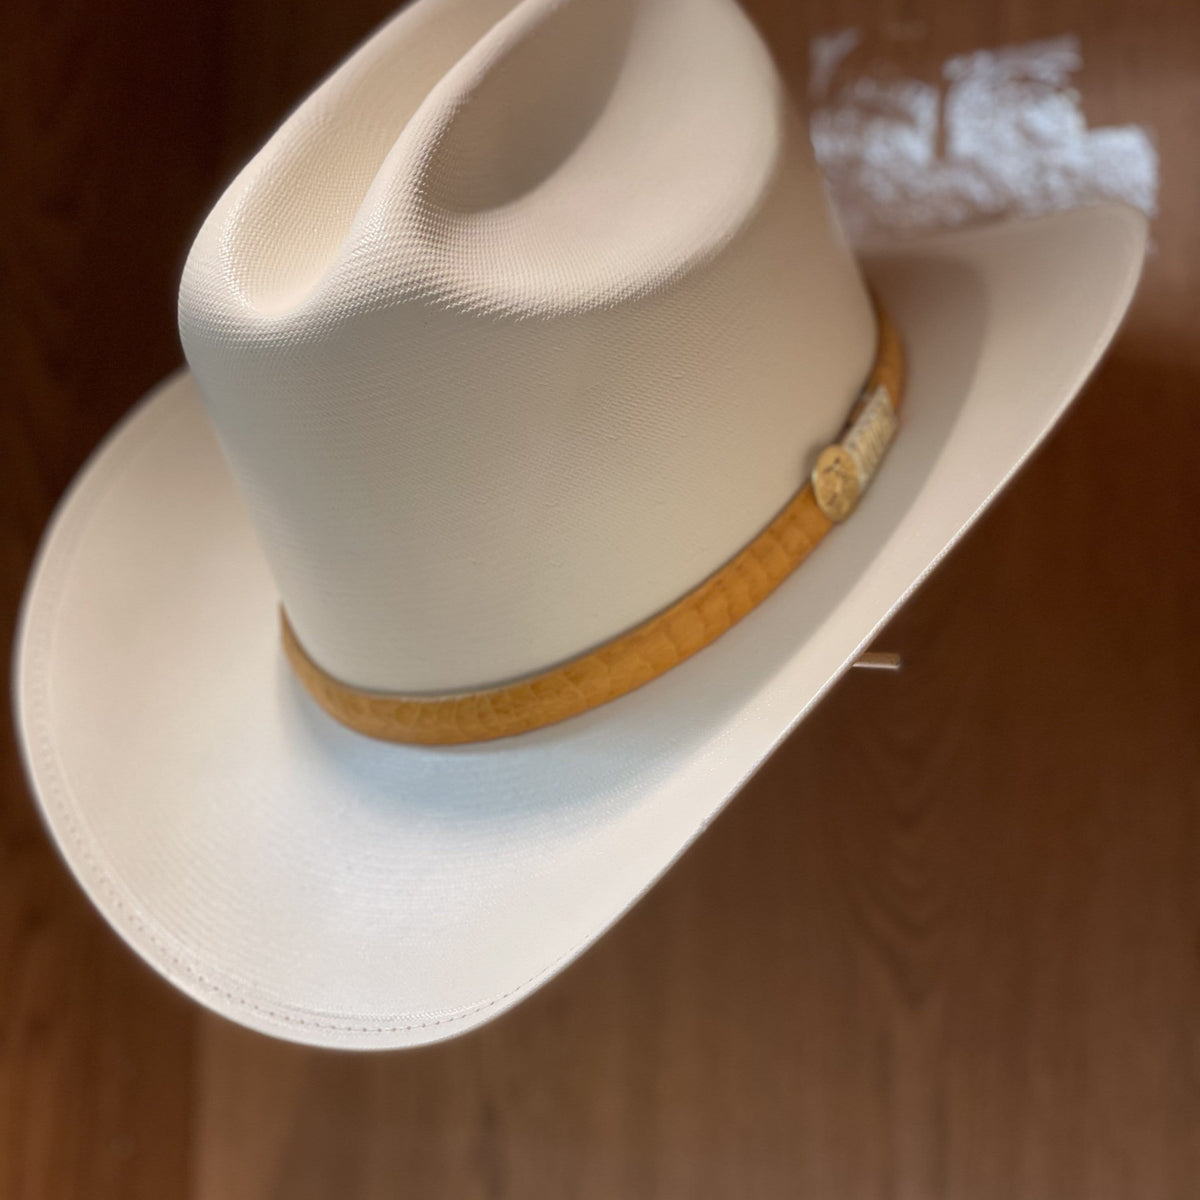 Tombstone Felt Cowboy Hats